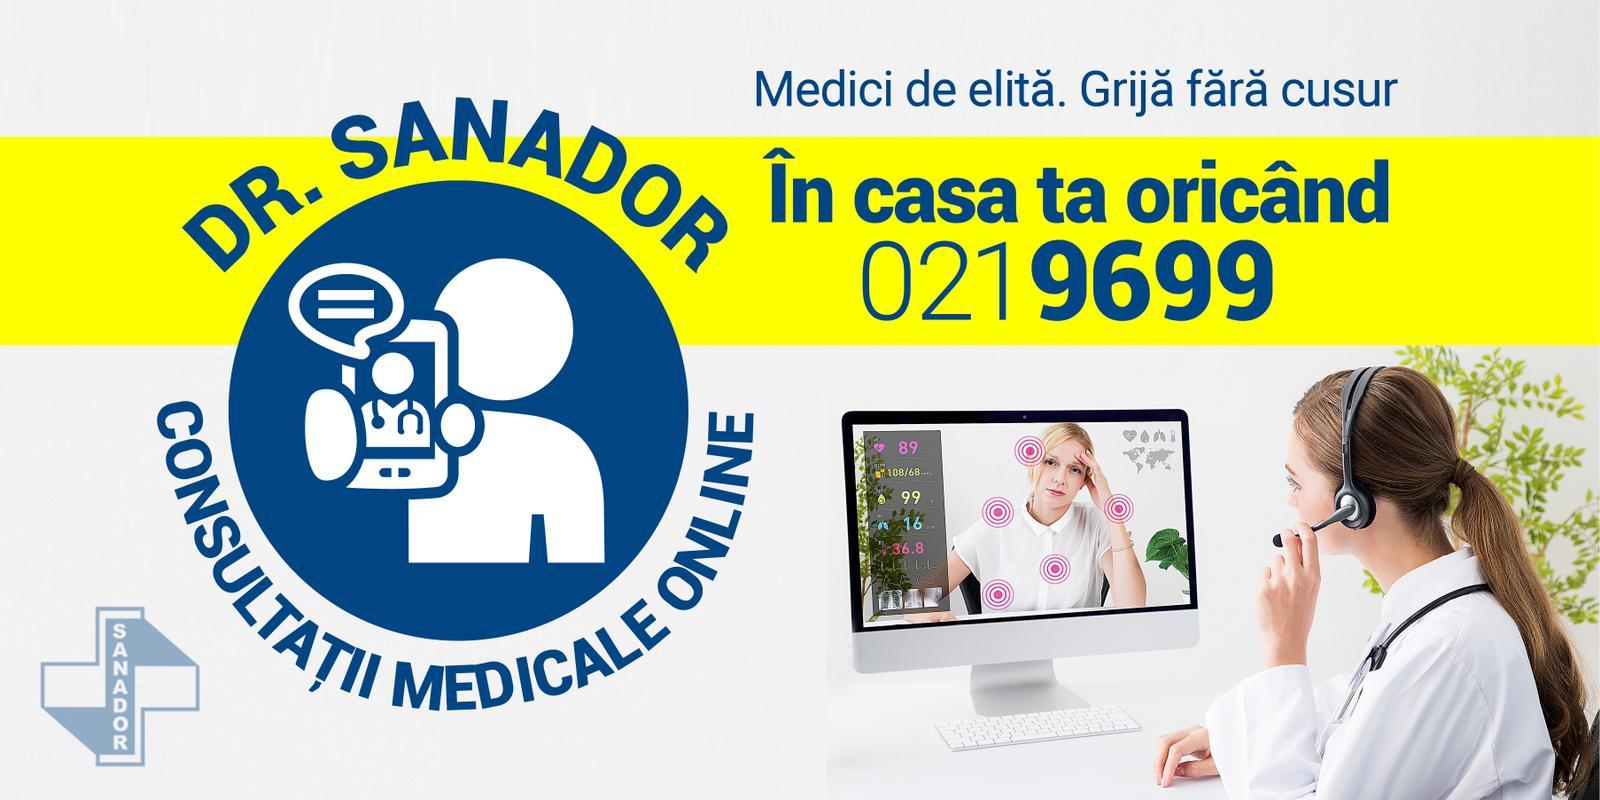 SANADOR lansează serviciul Dr. SANADOR - consultații medicale online